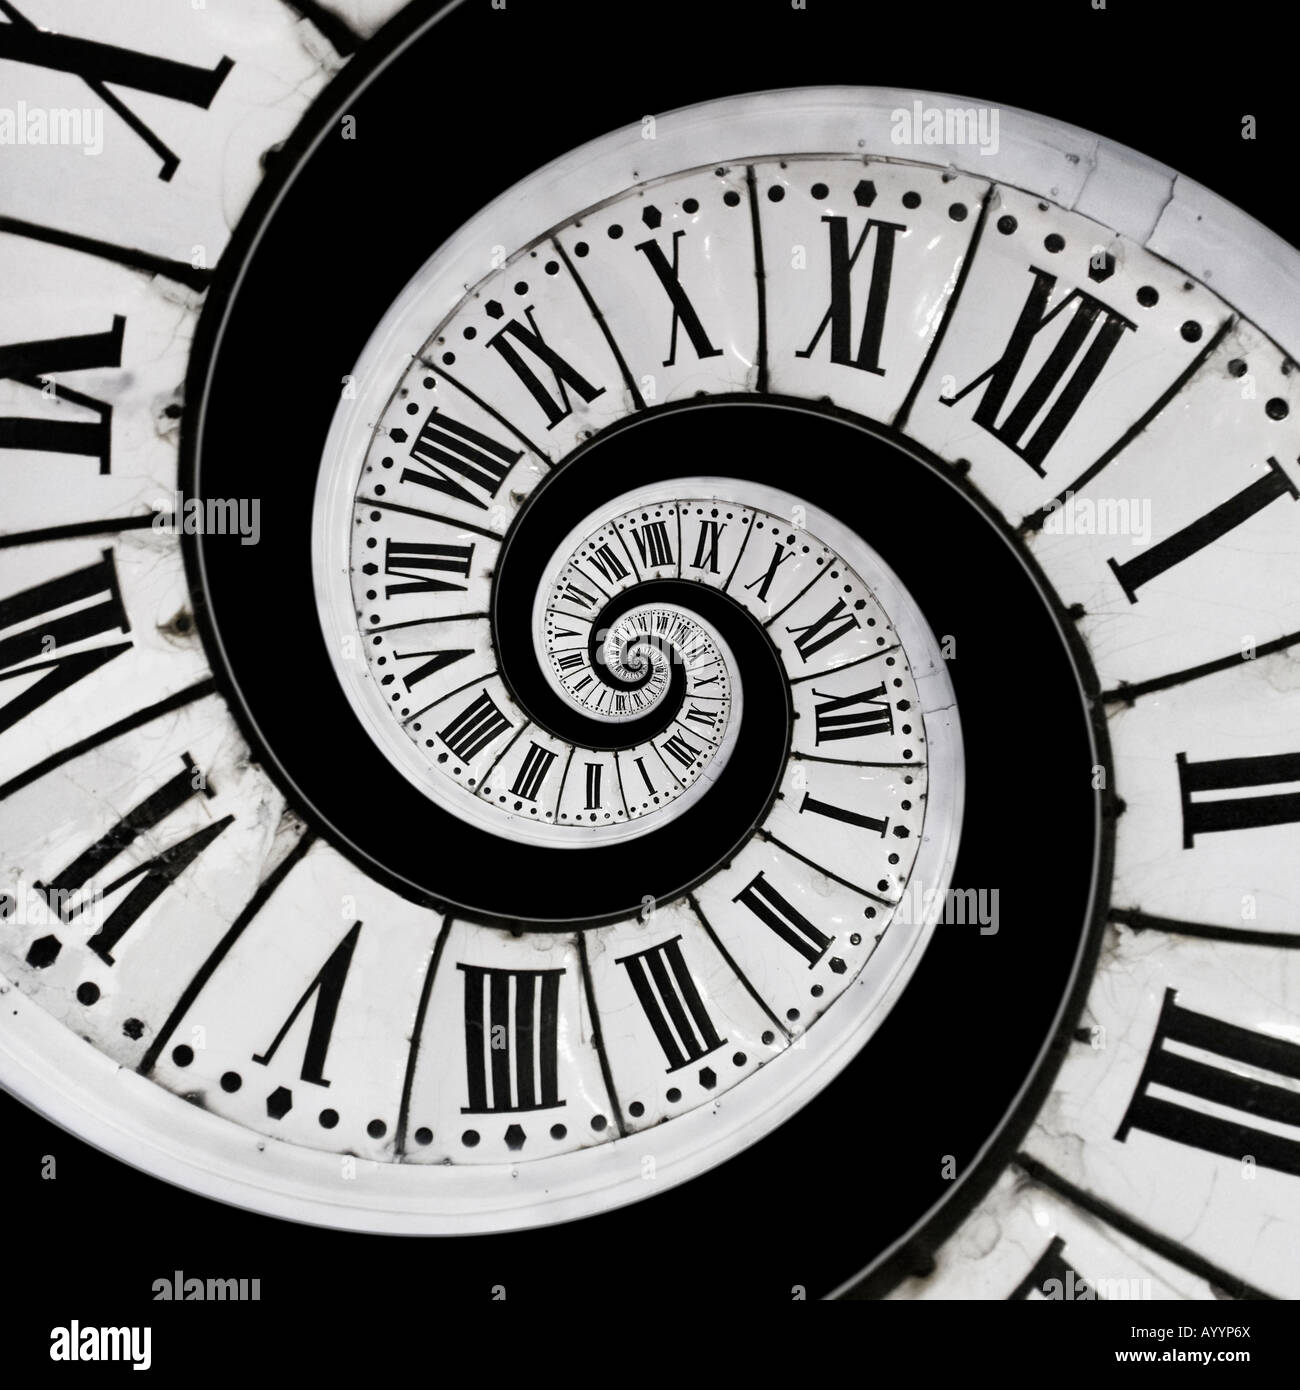 Il posizionamento in corrispondenza del centro di un vecchio orologio di una piccola copia della stessa faccia di clock. La mise en abîme d'onu cadran d' horloge. Foto Stock